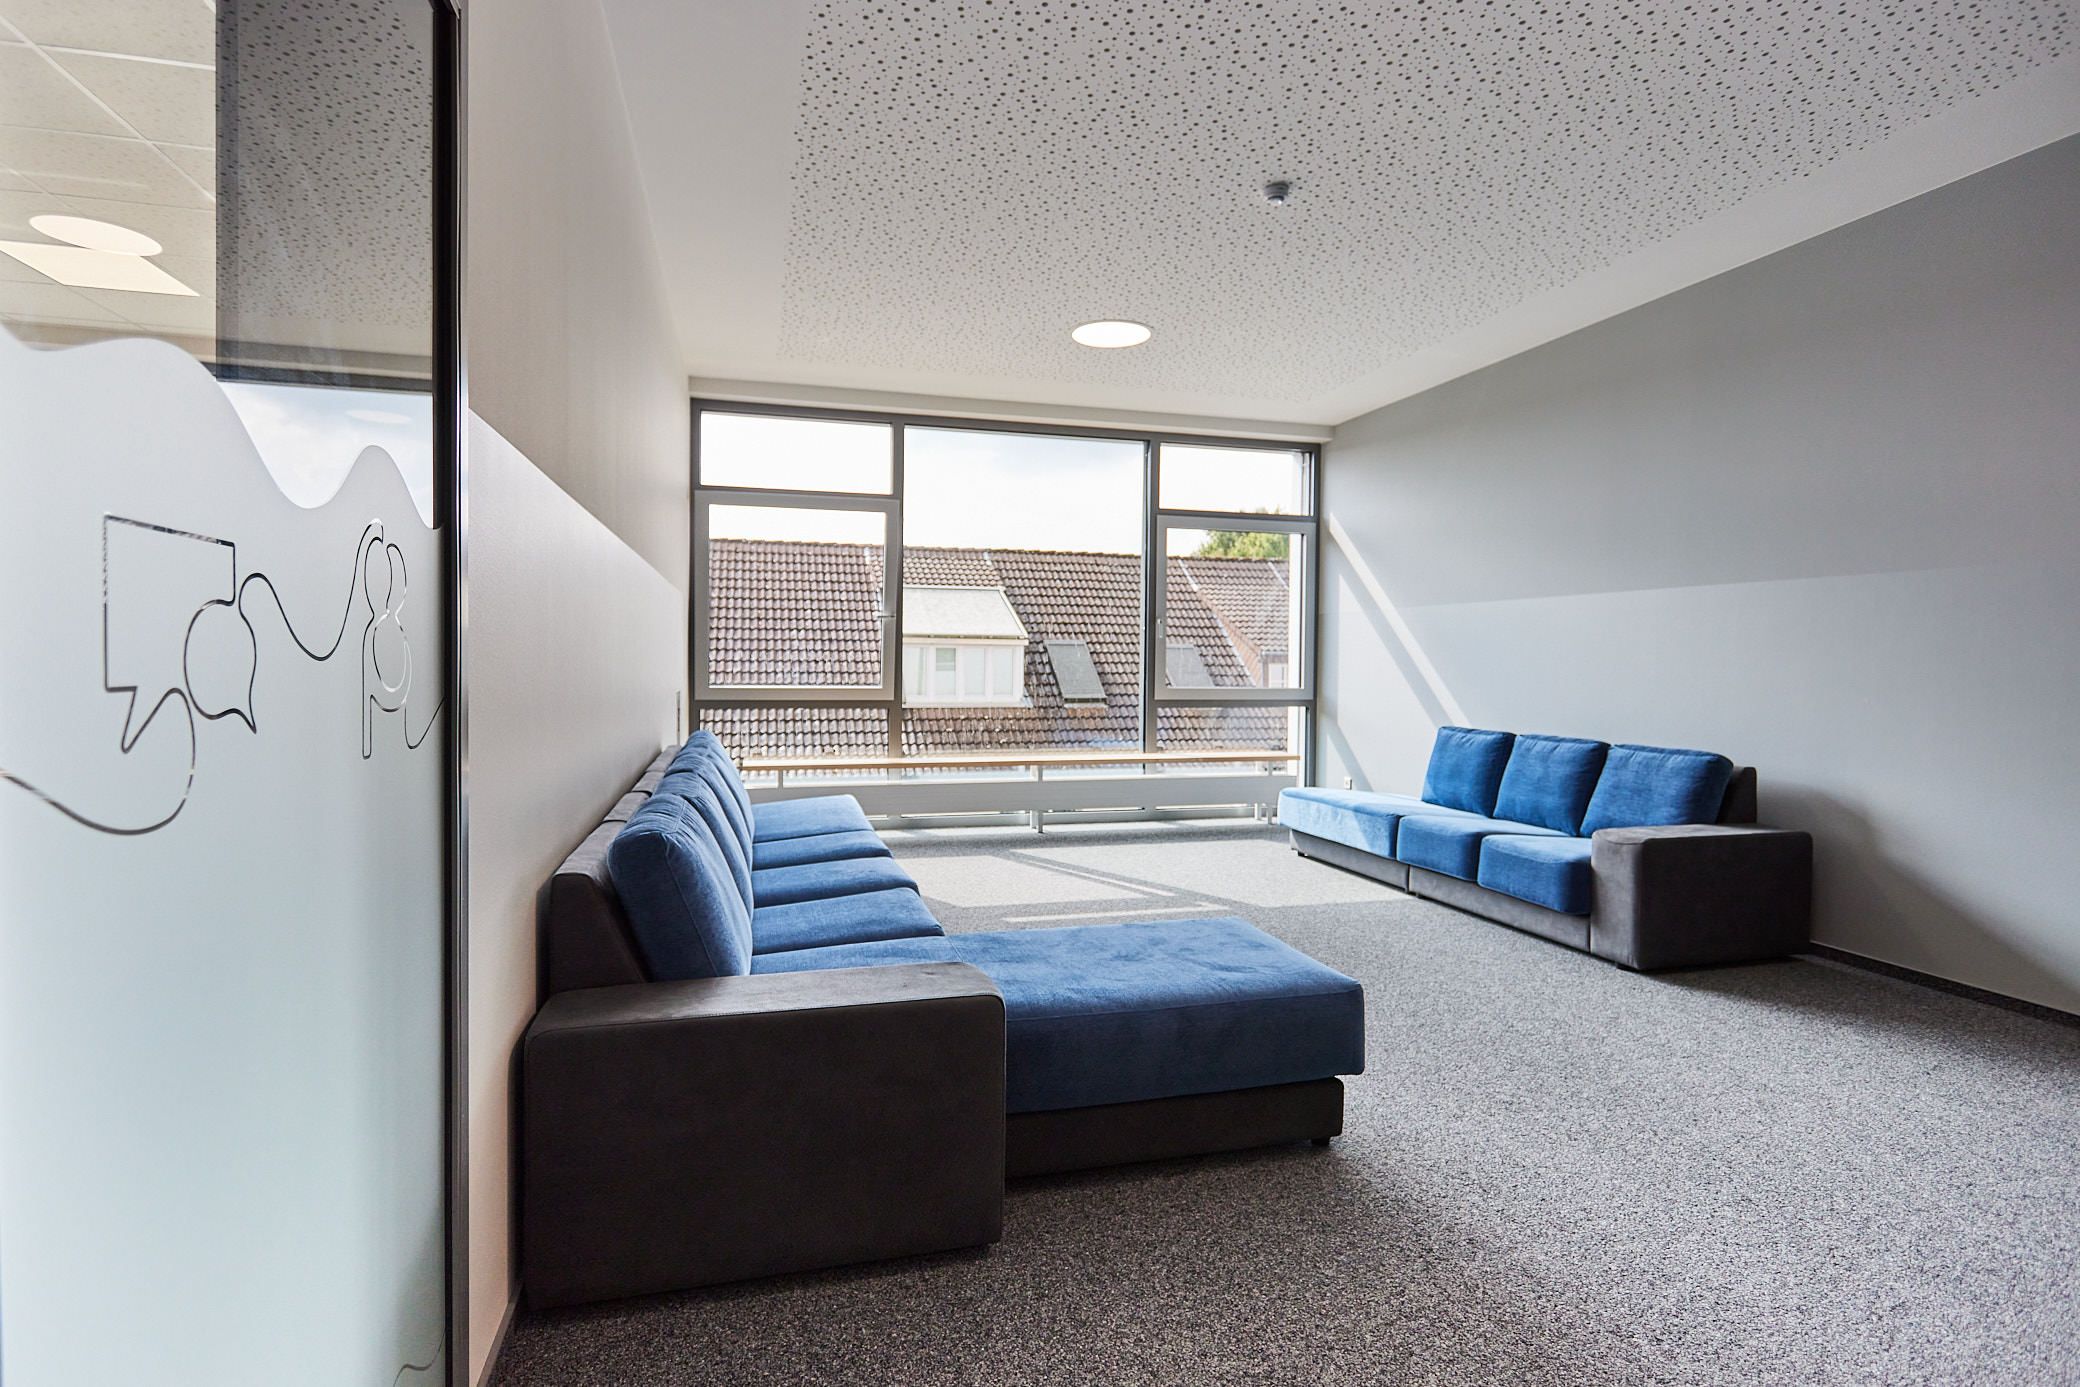 Großer Loungebereich. Großes Fenster, blaue Sofas. Ein Projekt von EPU ARCHITEKTEN.